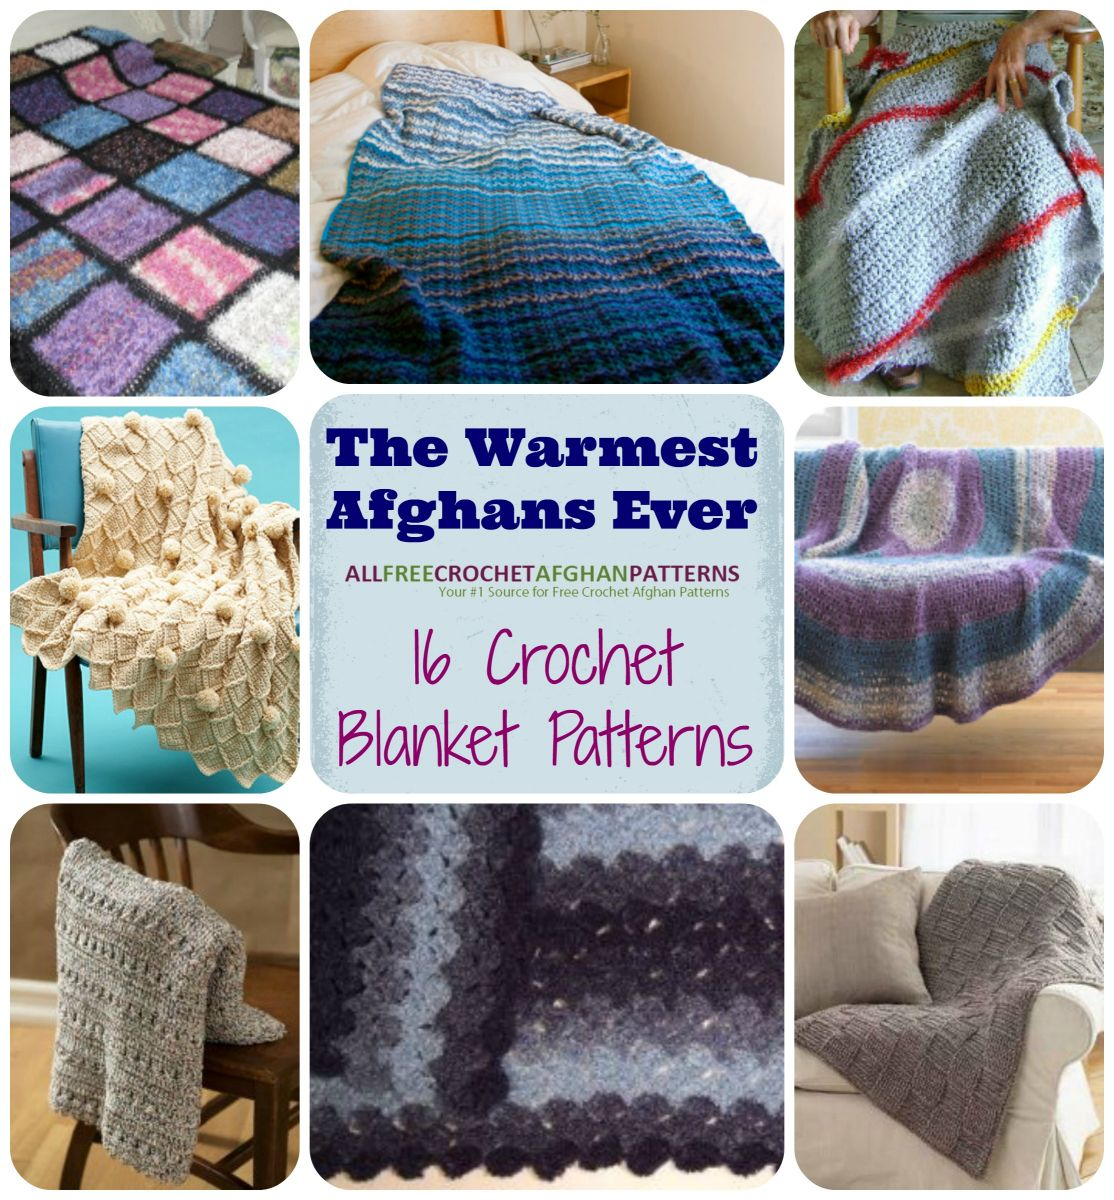 Bulky Crochet Blanket Pattern The Warmest Afghans Ever 16 Crochet Blanket Patterns